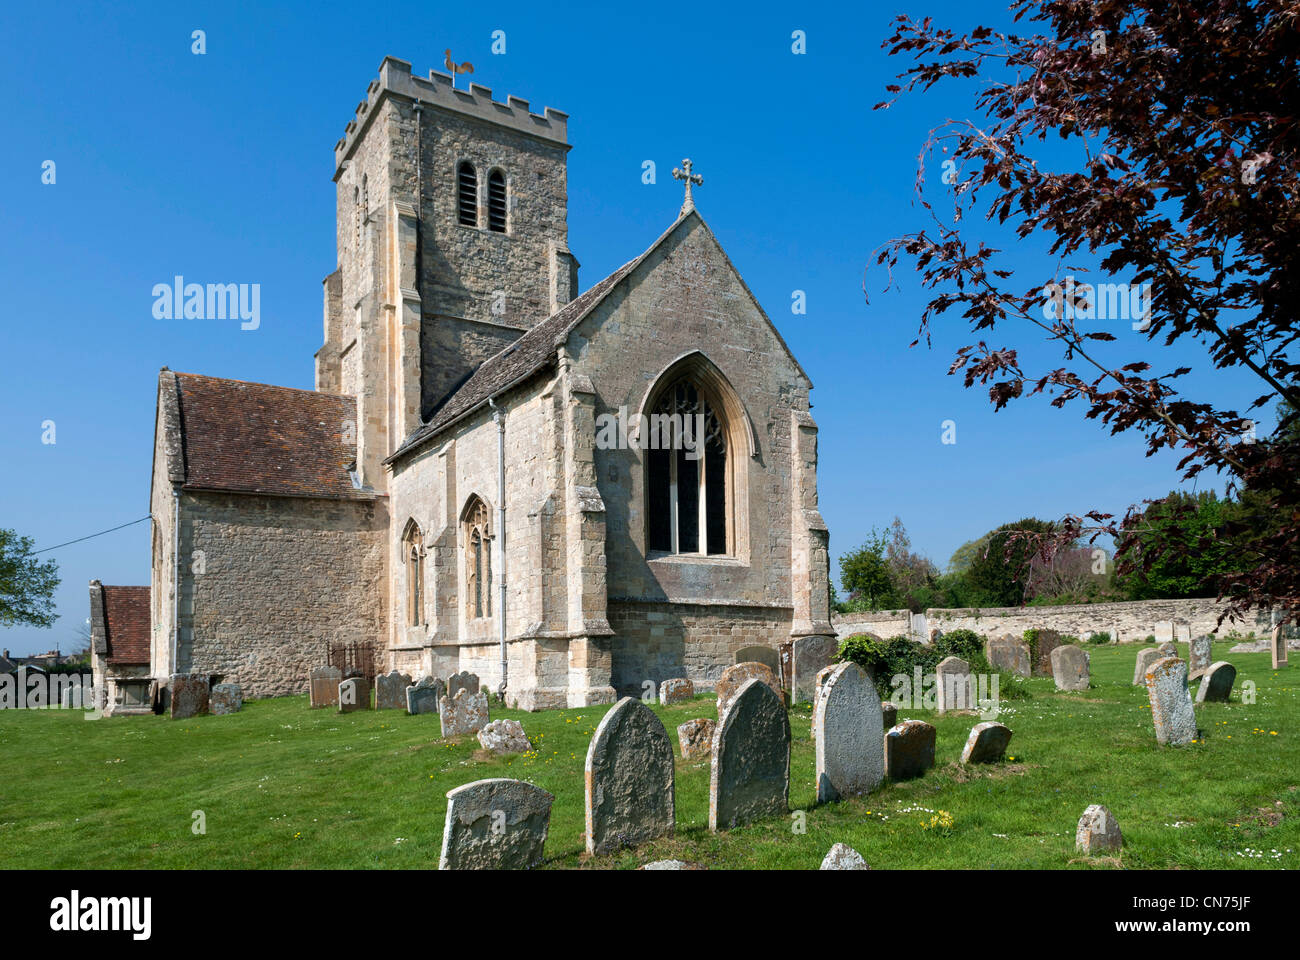 Ancien village médiéval, église de campagne - Tous les Saints dans l'église paroissiale Cuddesdon, Oxfordshire, UK Banque D'Images